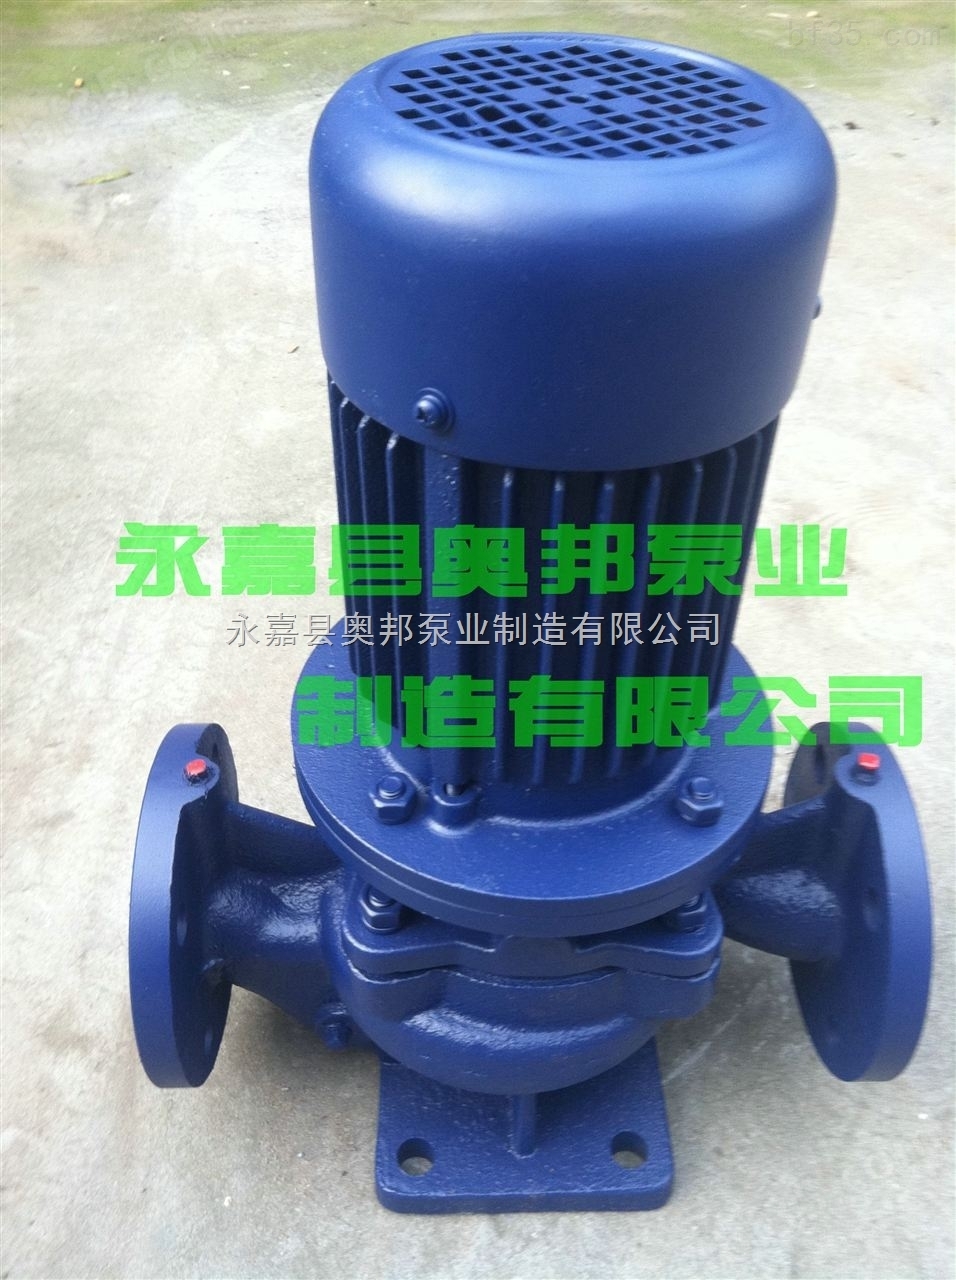 单级管道泵,立式管道泵,立式管道泵配件